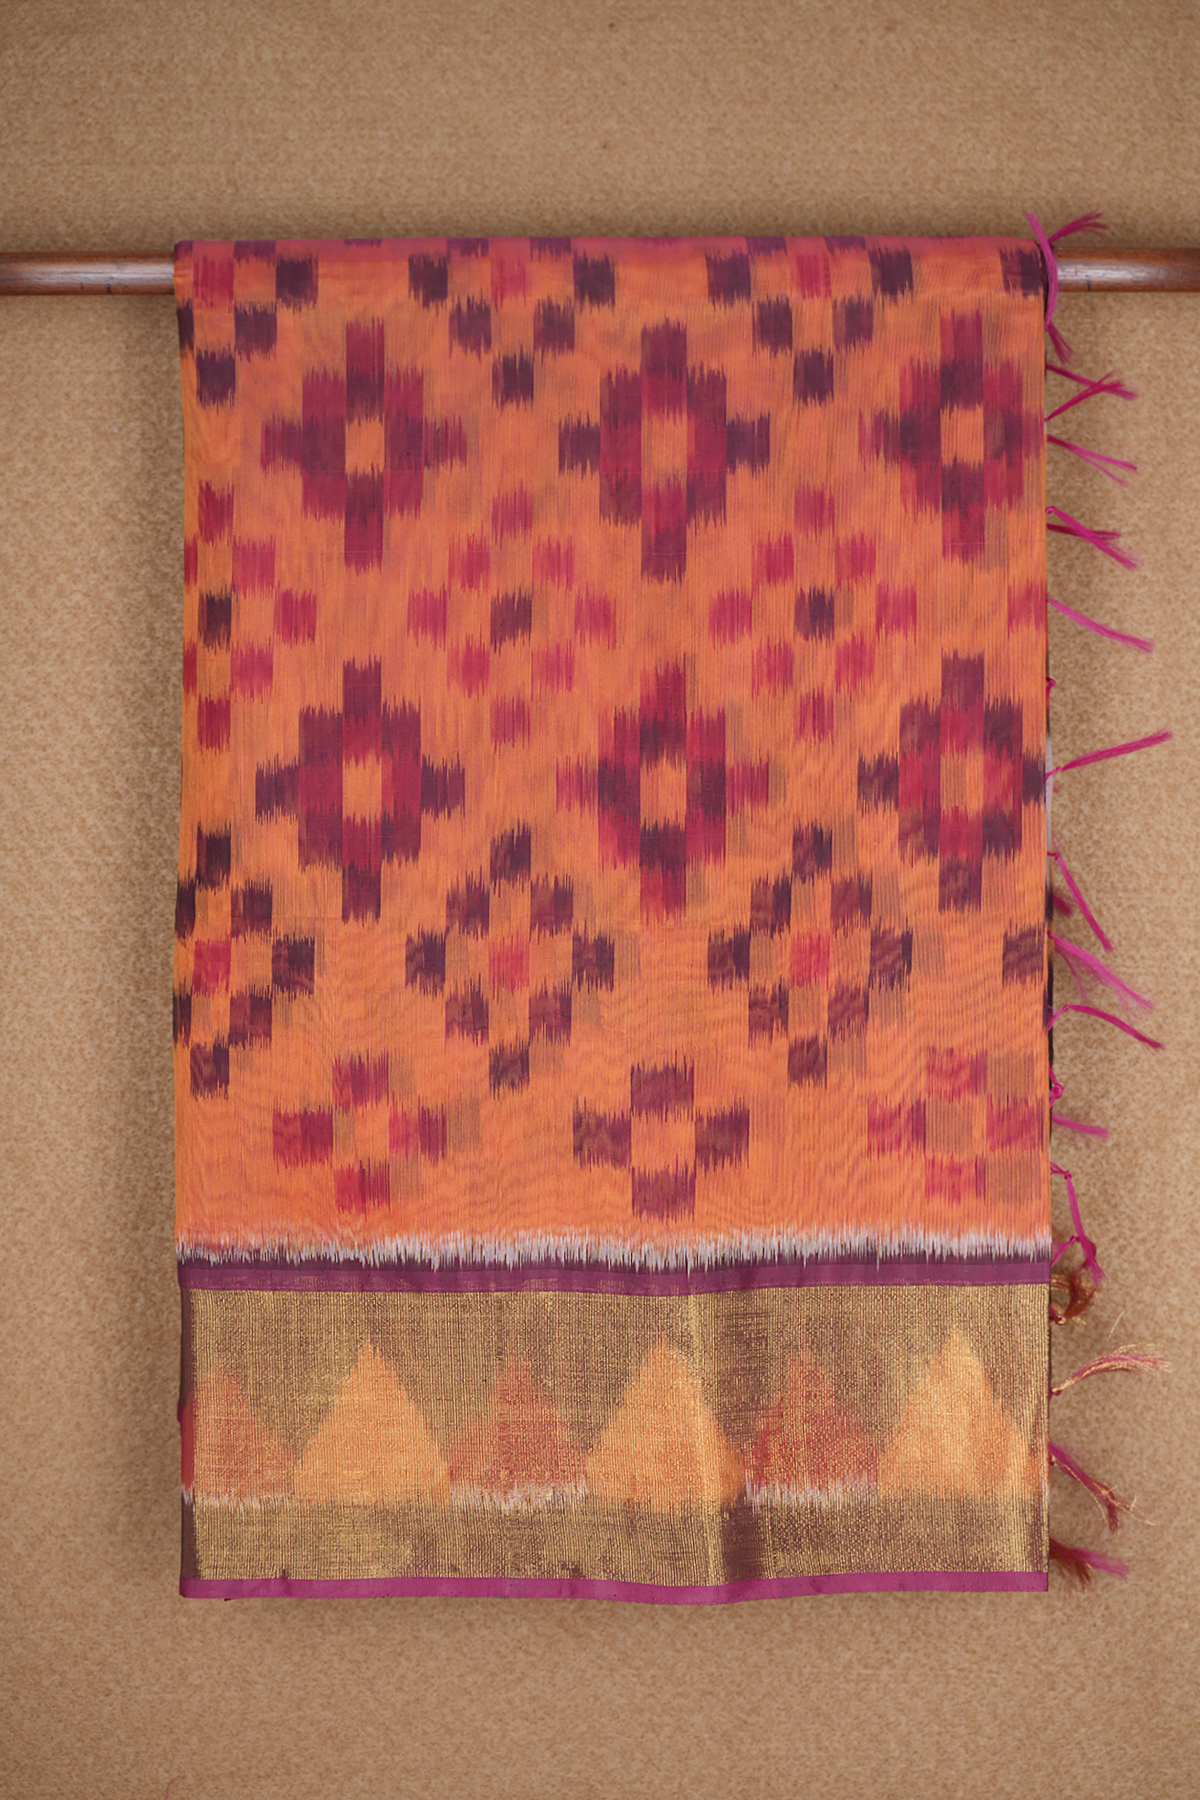 Allover Buttas Design Orange Kora Silk Cotton Saree